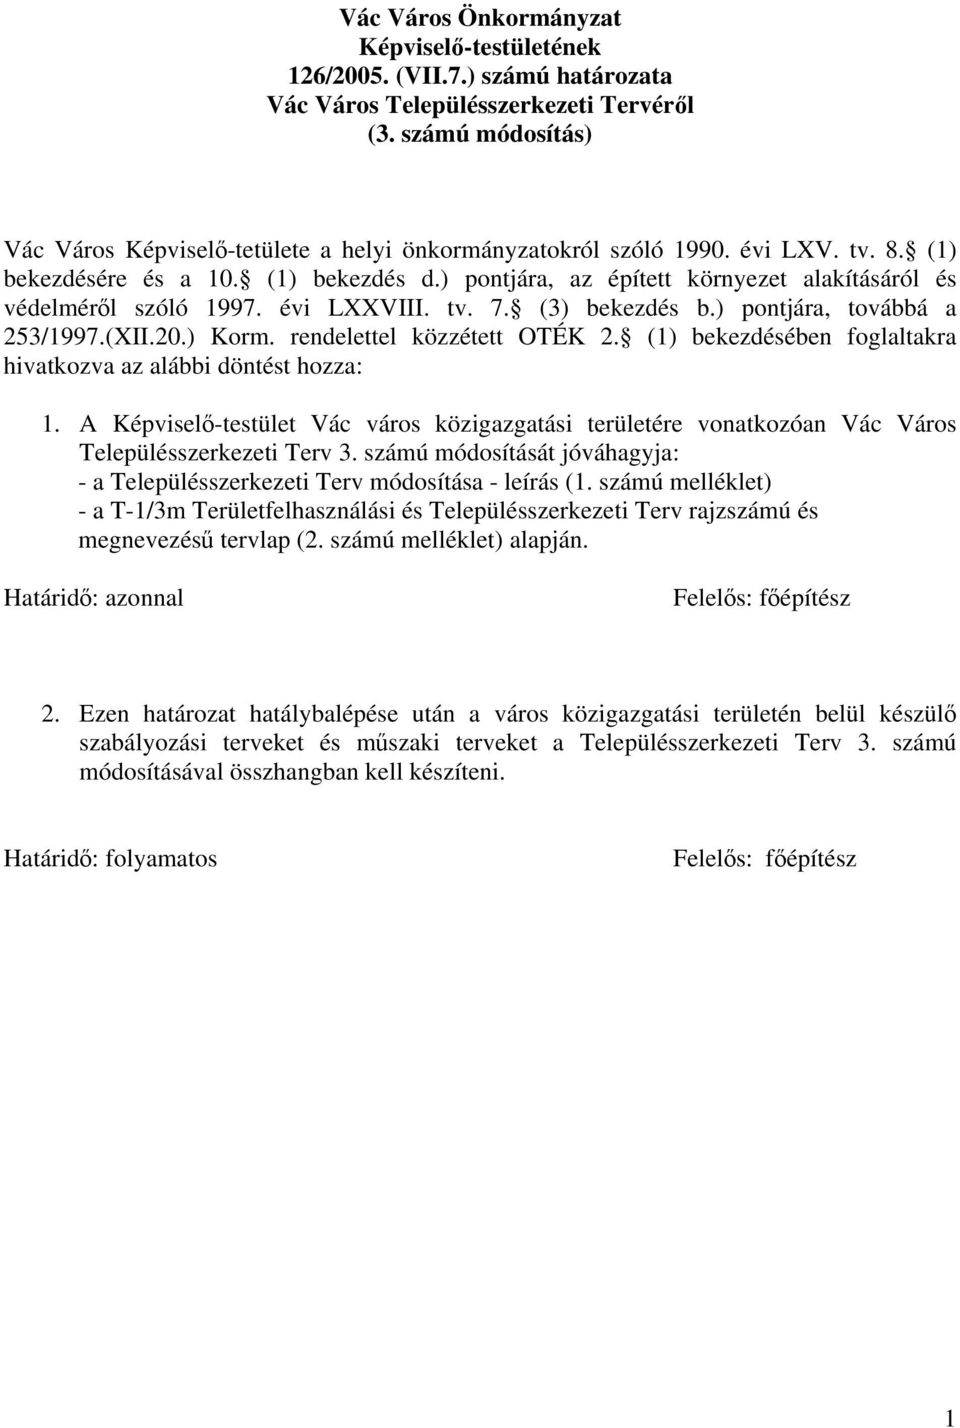 ) pontjára, az épített környezet alakításáról és védelméről szóló 1997. évi LXXVIII. tv. 7. (3) bekezdés b.) pontjára, továbbá a 253/1997.(XII.20.) Korm. rendelettel közzétett OTÉK 2.